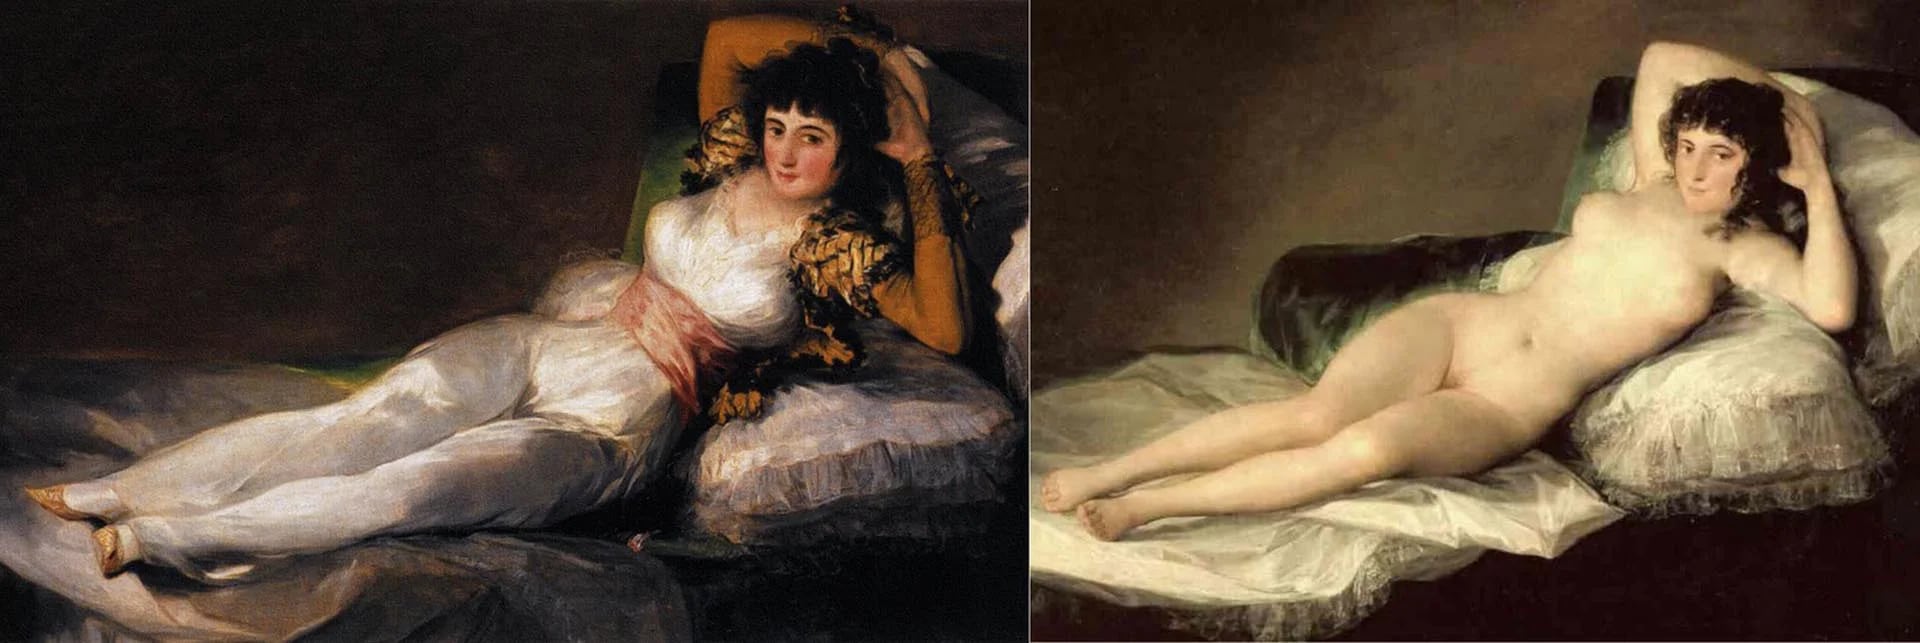 “La maja vestida” y “La maja desnuda”, de Francisco de Goya